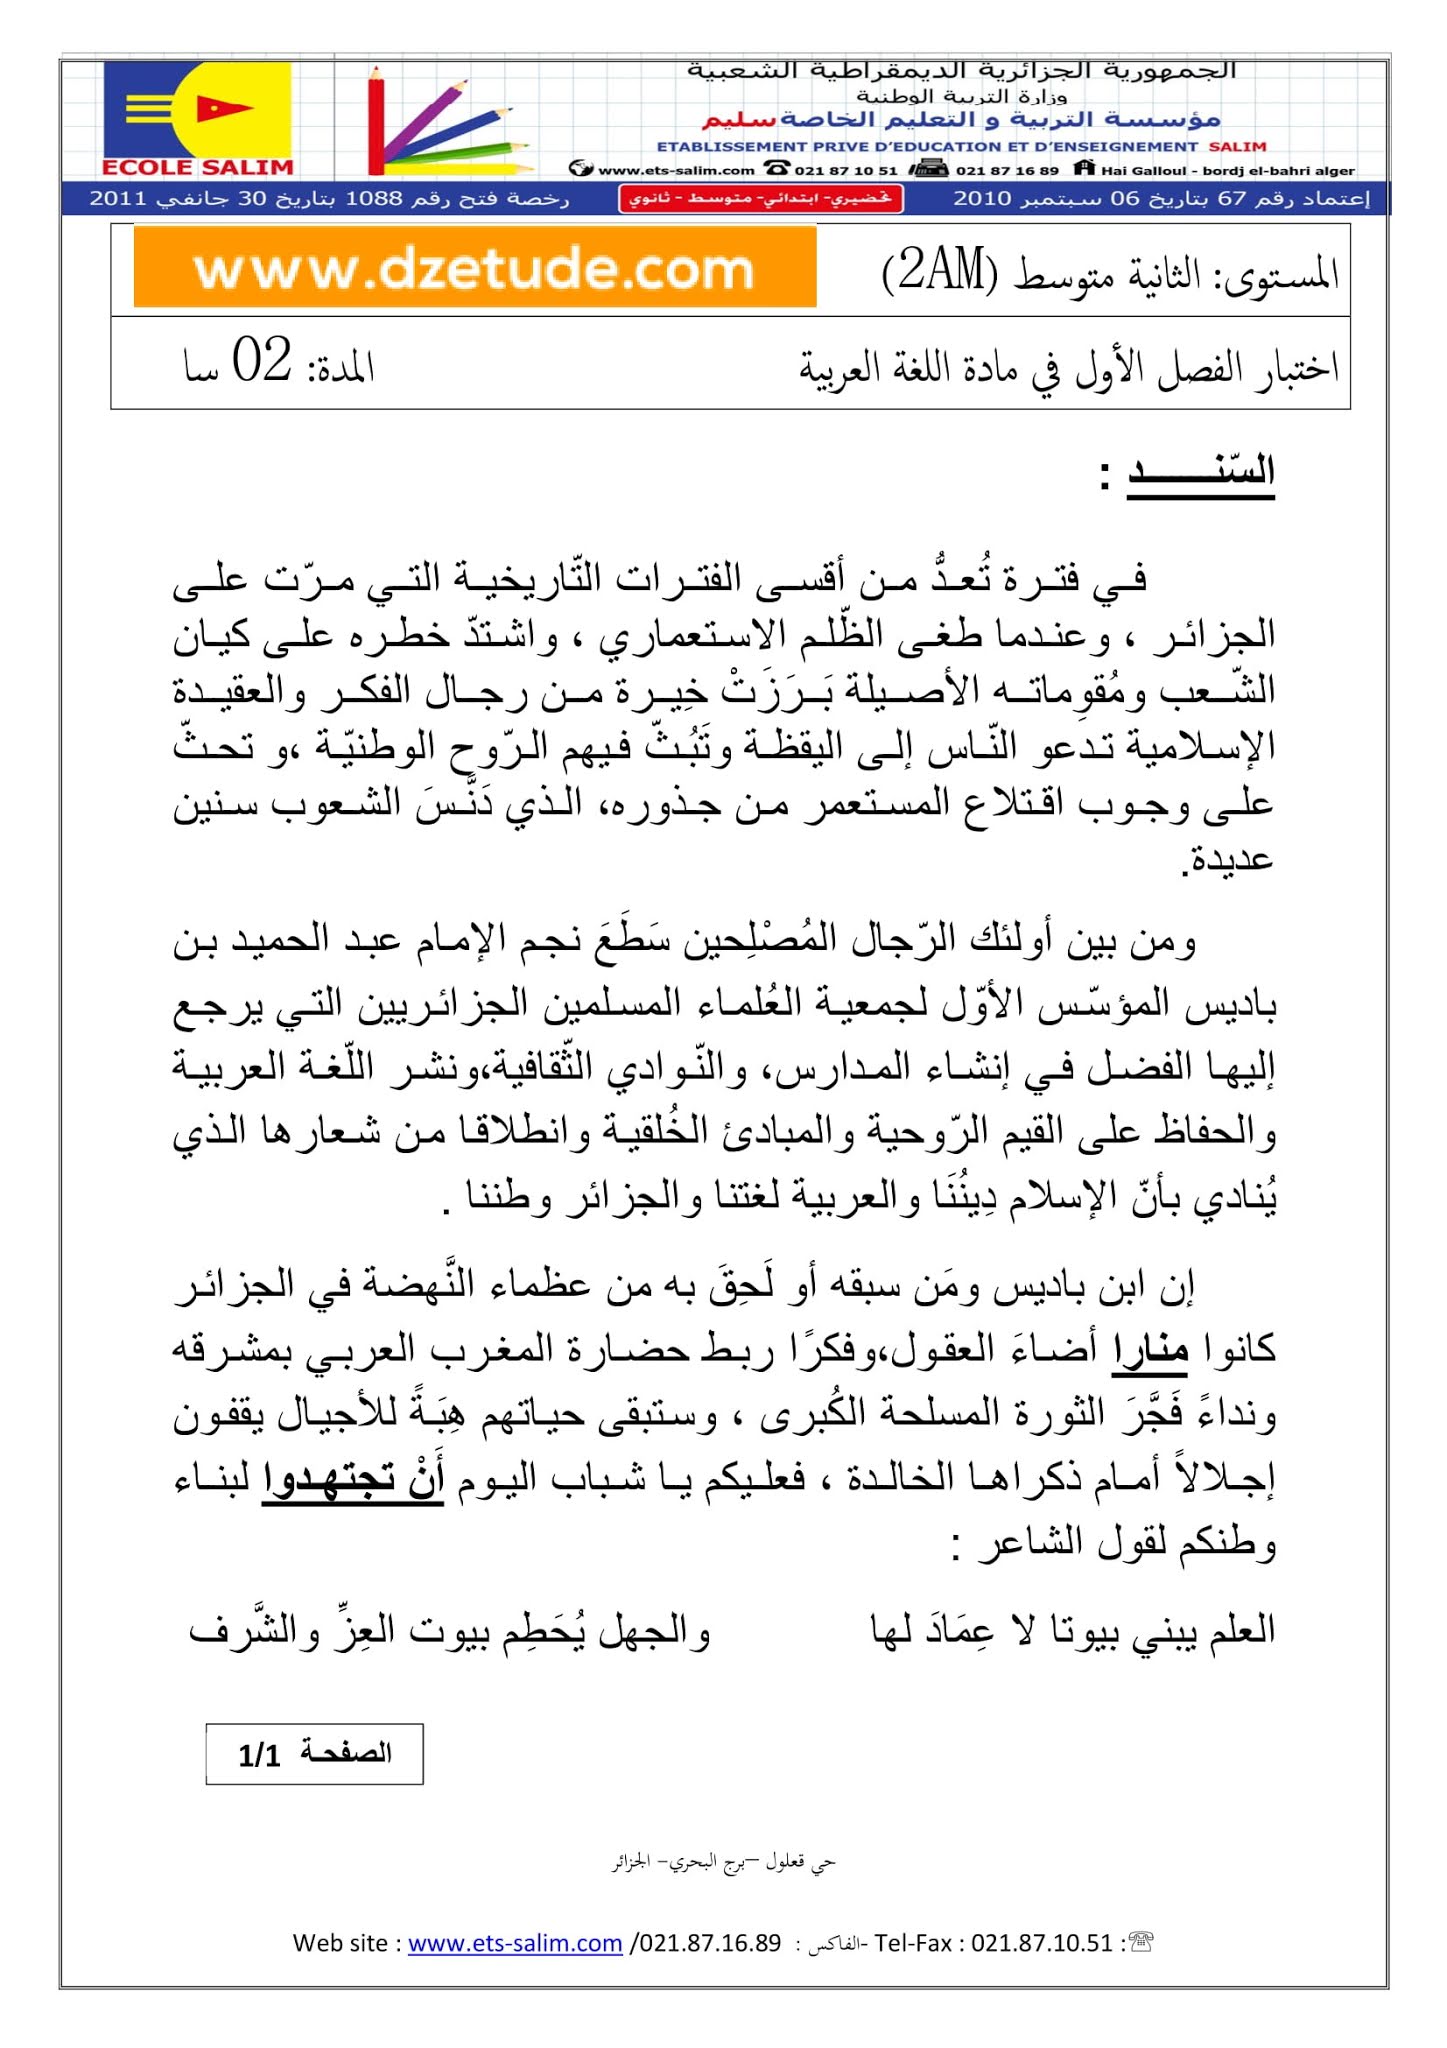 إختبار اللغة العربية الفصل الأول للسنة الثانية متوسط - الجيل الثاني نموذج 2